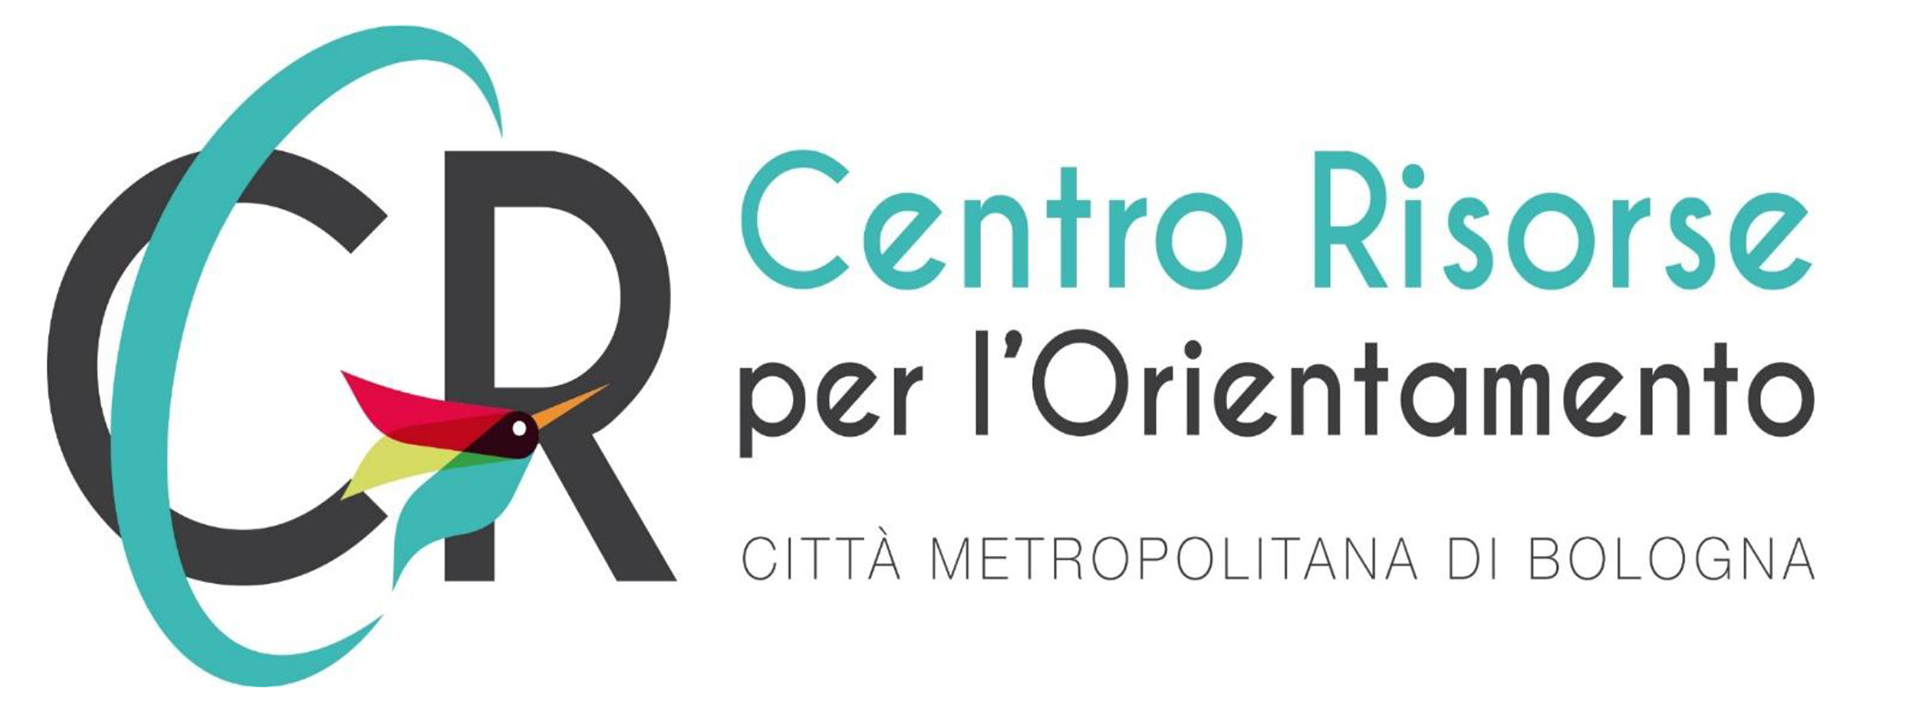 Logo Centro risorse per l'orientamento 